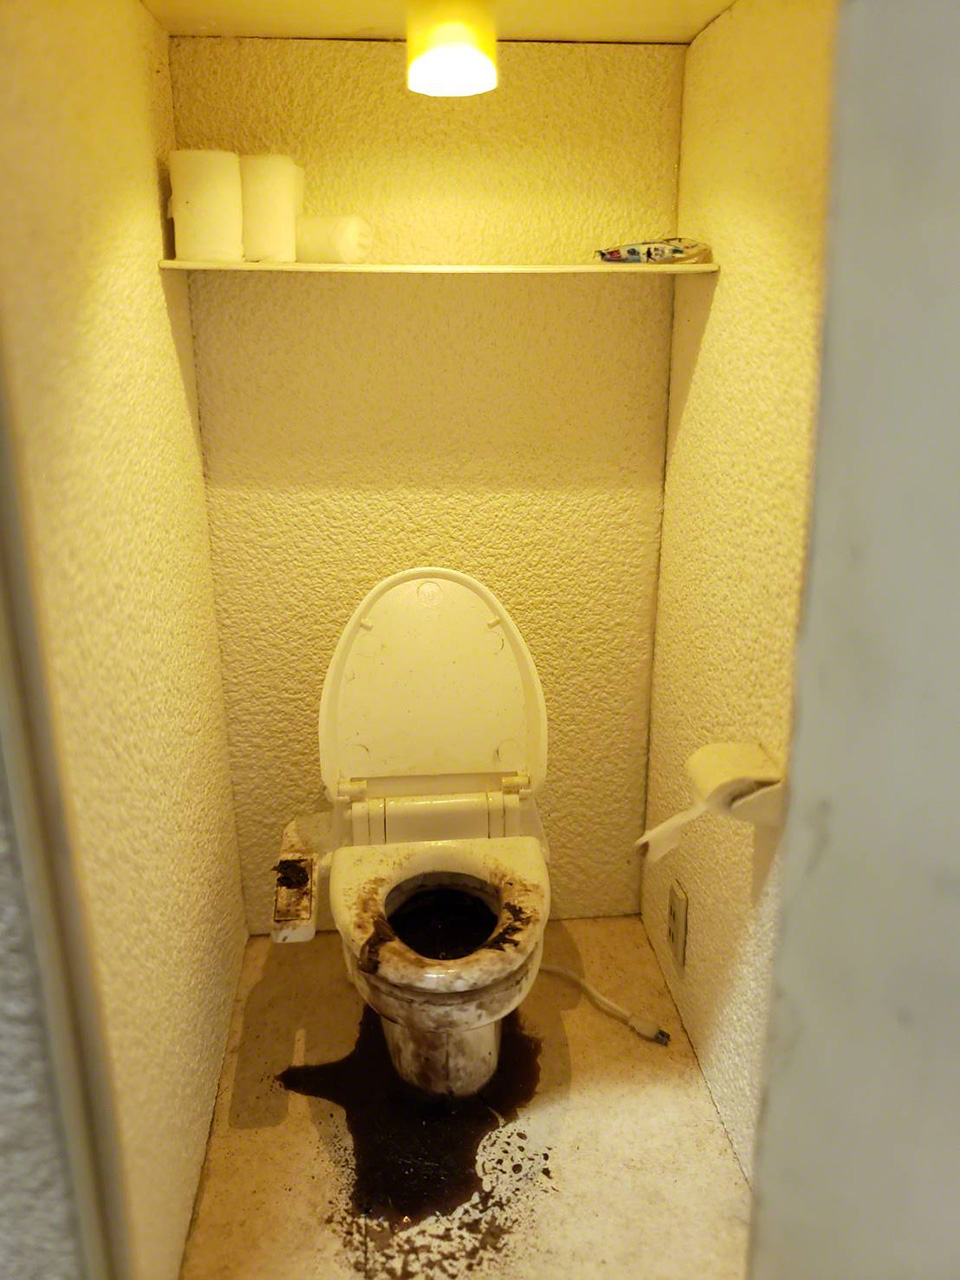 「トイレでのヒートショックによる孤独死」のミニチュア。